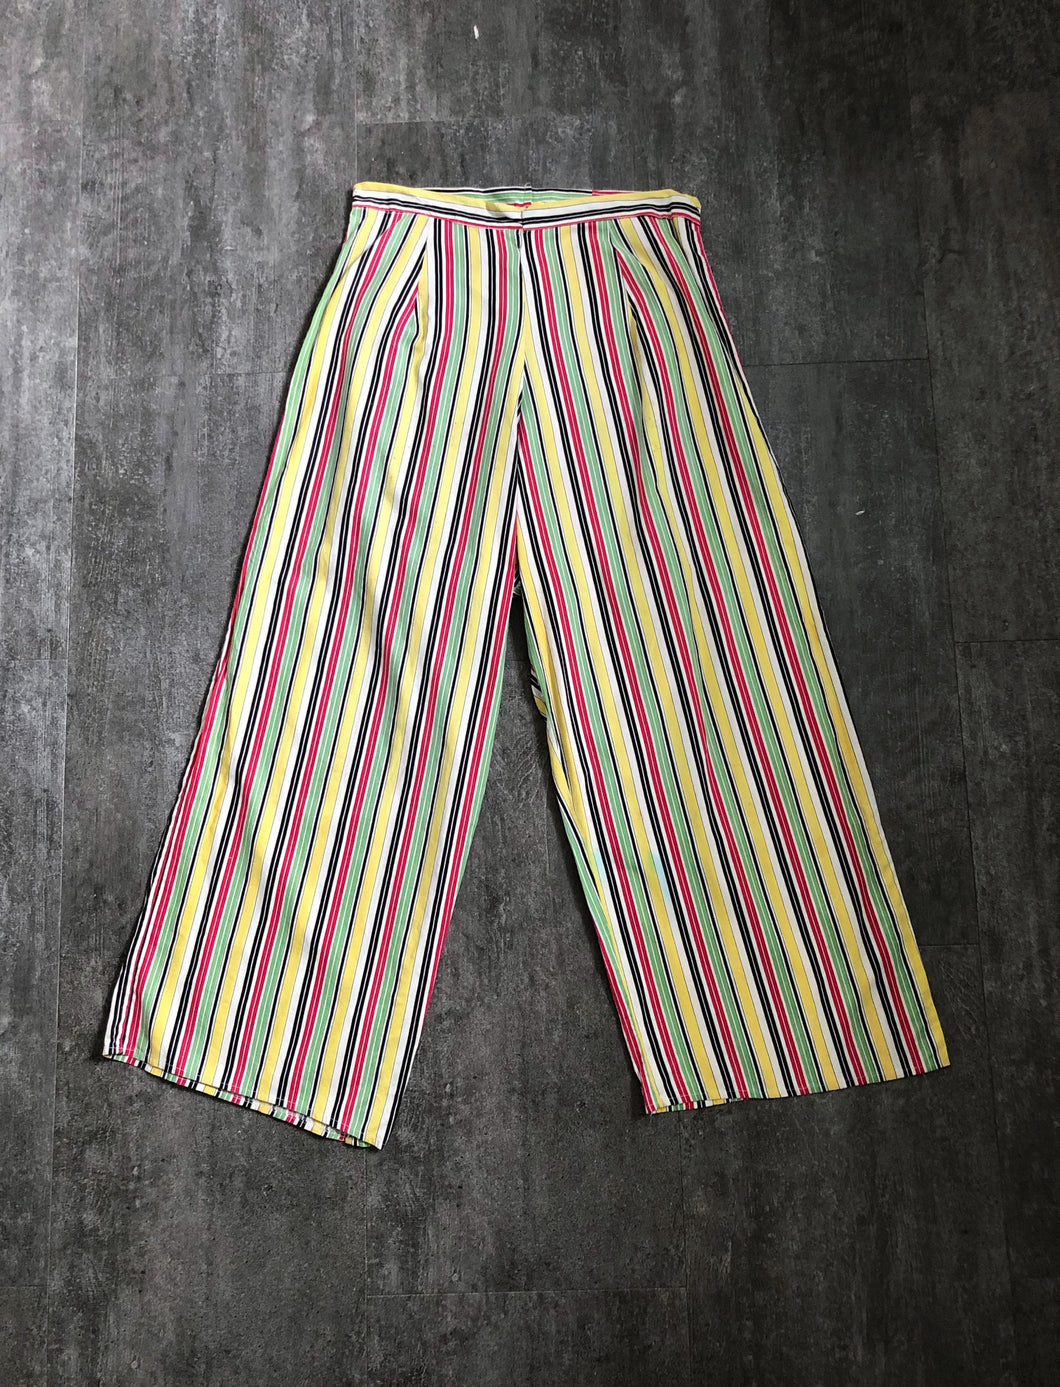 1940s striped cotton pants . vintage 40s pants . size m to m/l